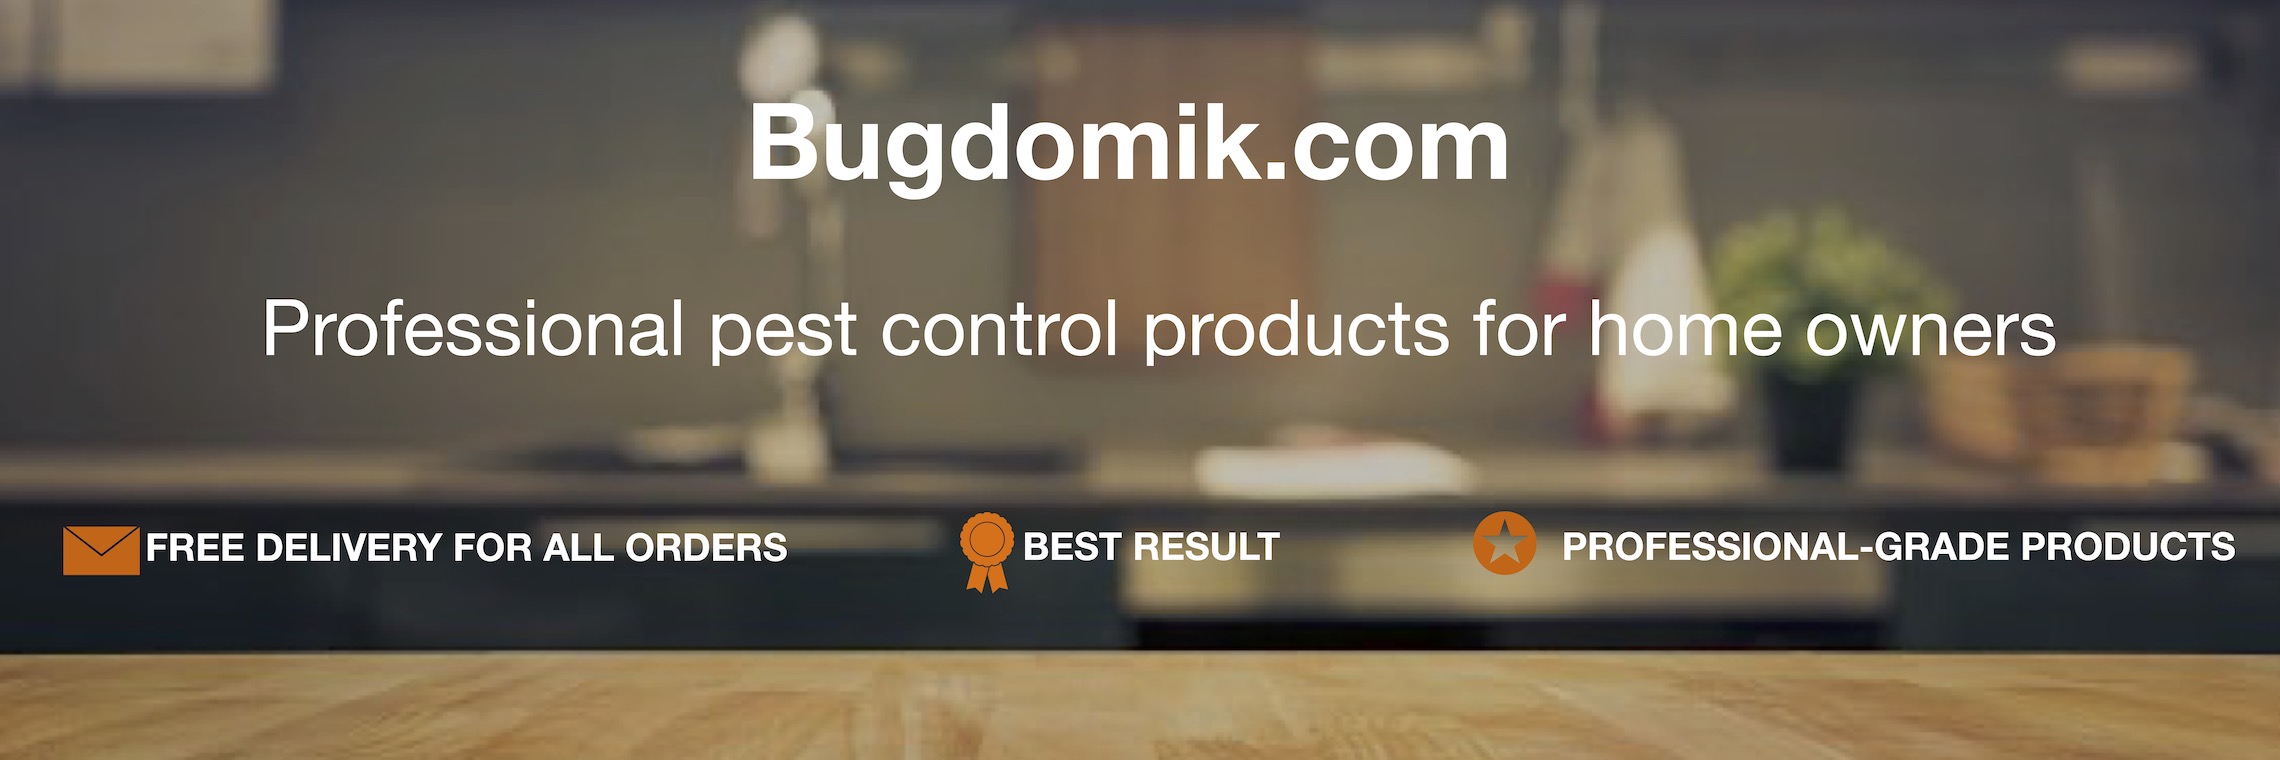 bugdomik.com